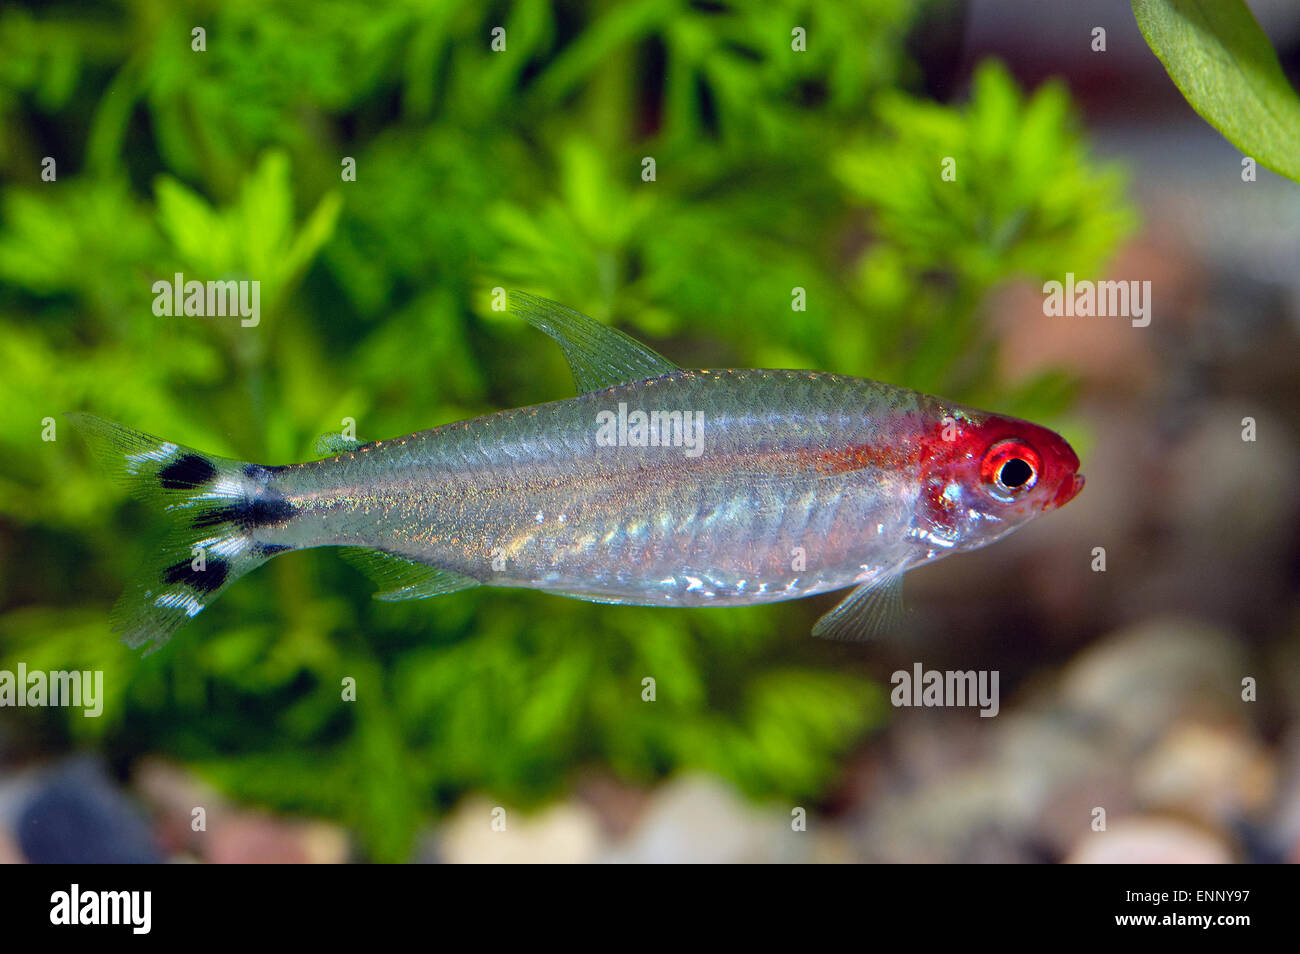 Nice red head tetra fish from genus Hemigrammus. Stock Photo